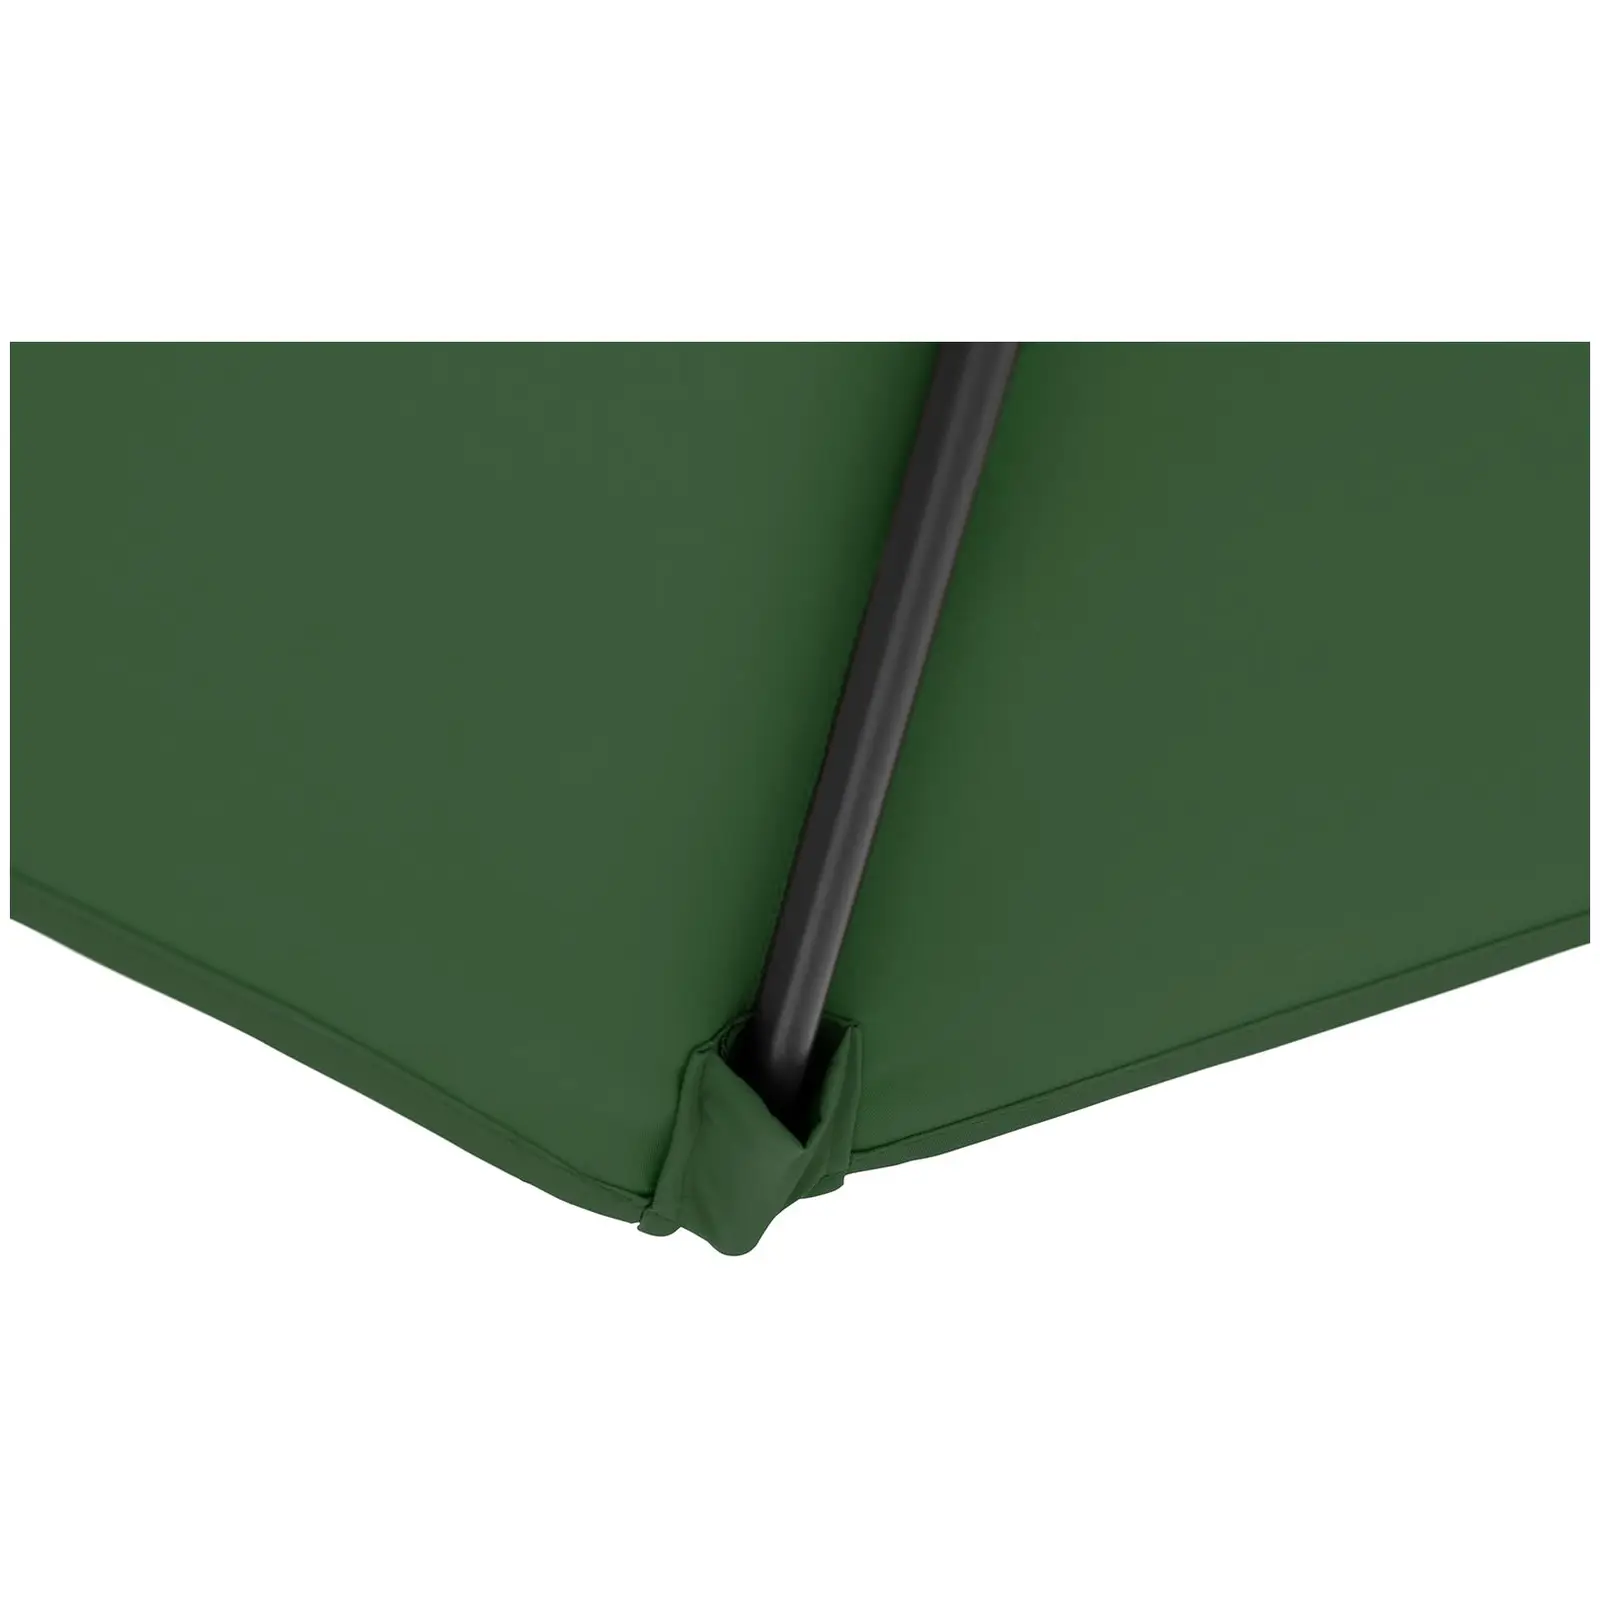 Andrahandssortering Hängparasoll - grönt - rektangulärt - 250 x 250 cm - kan lutas